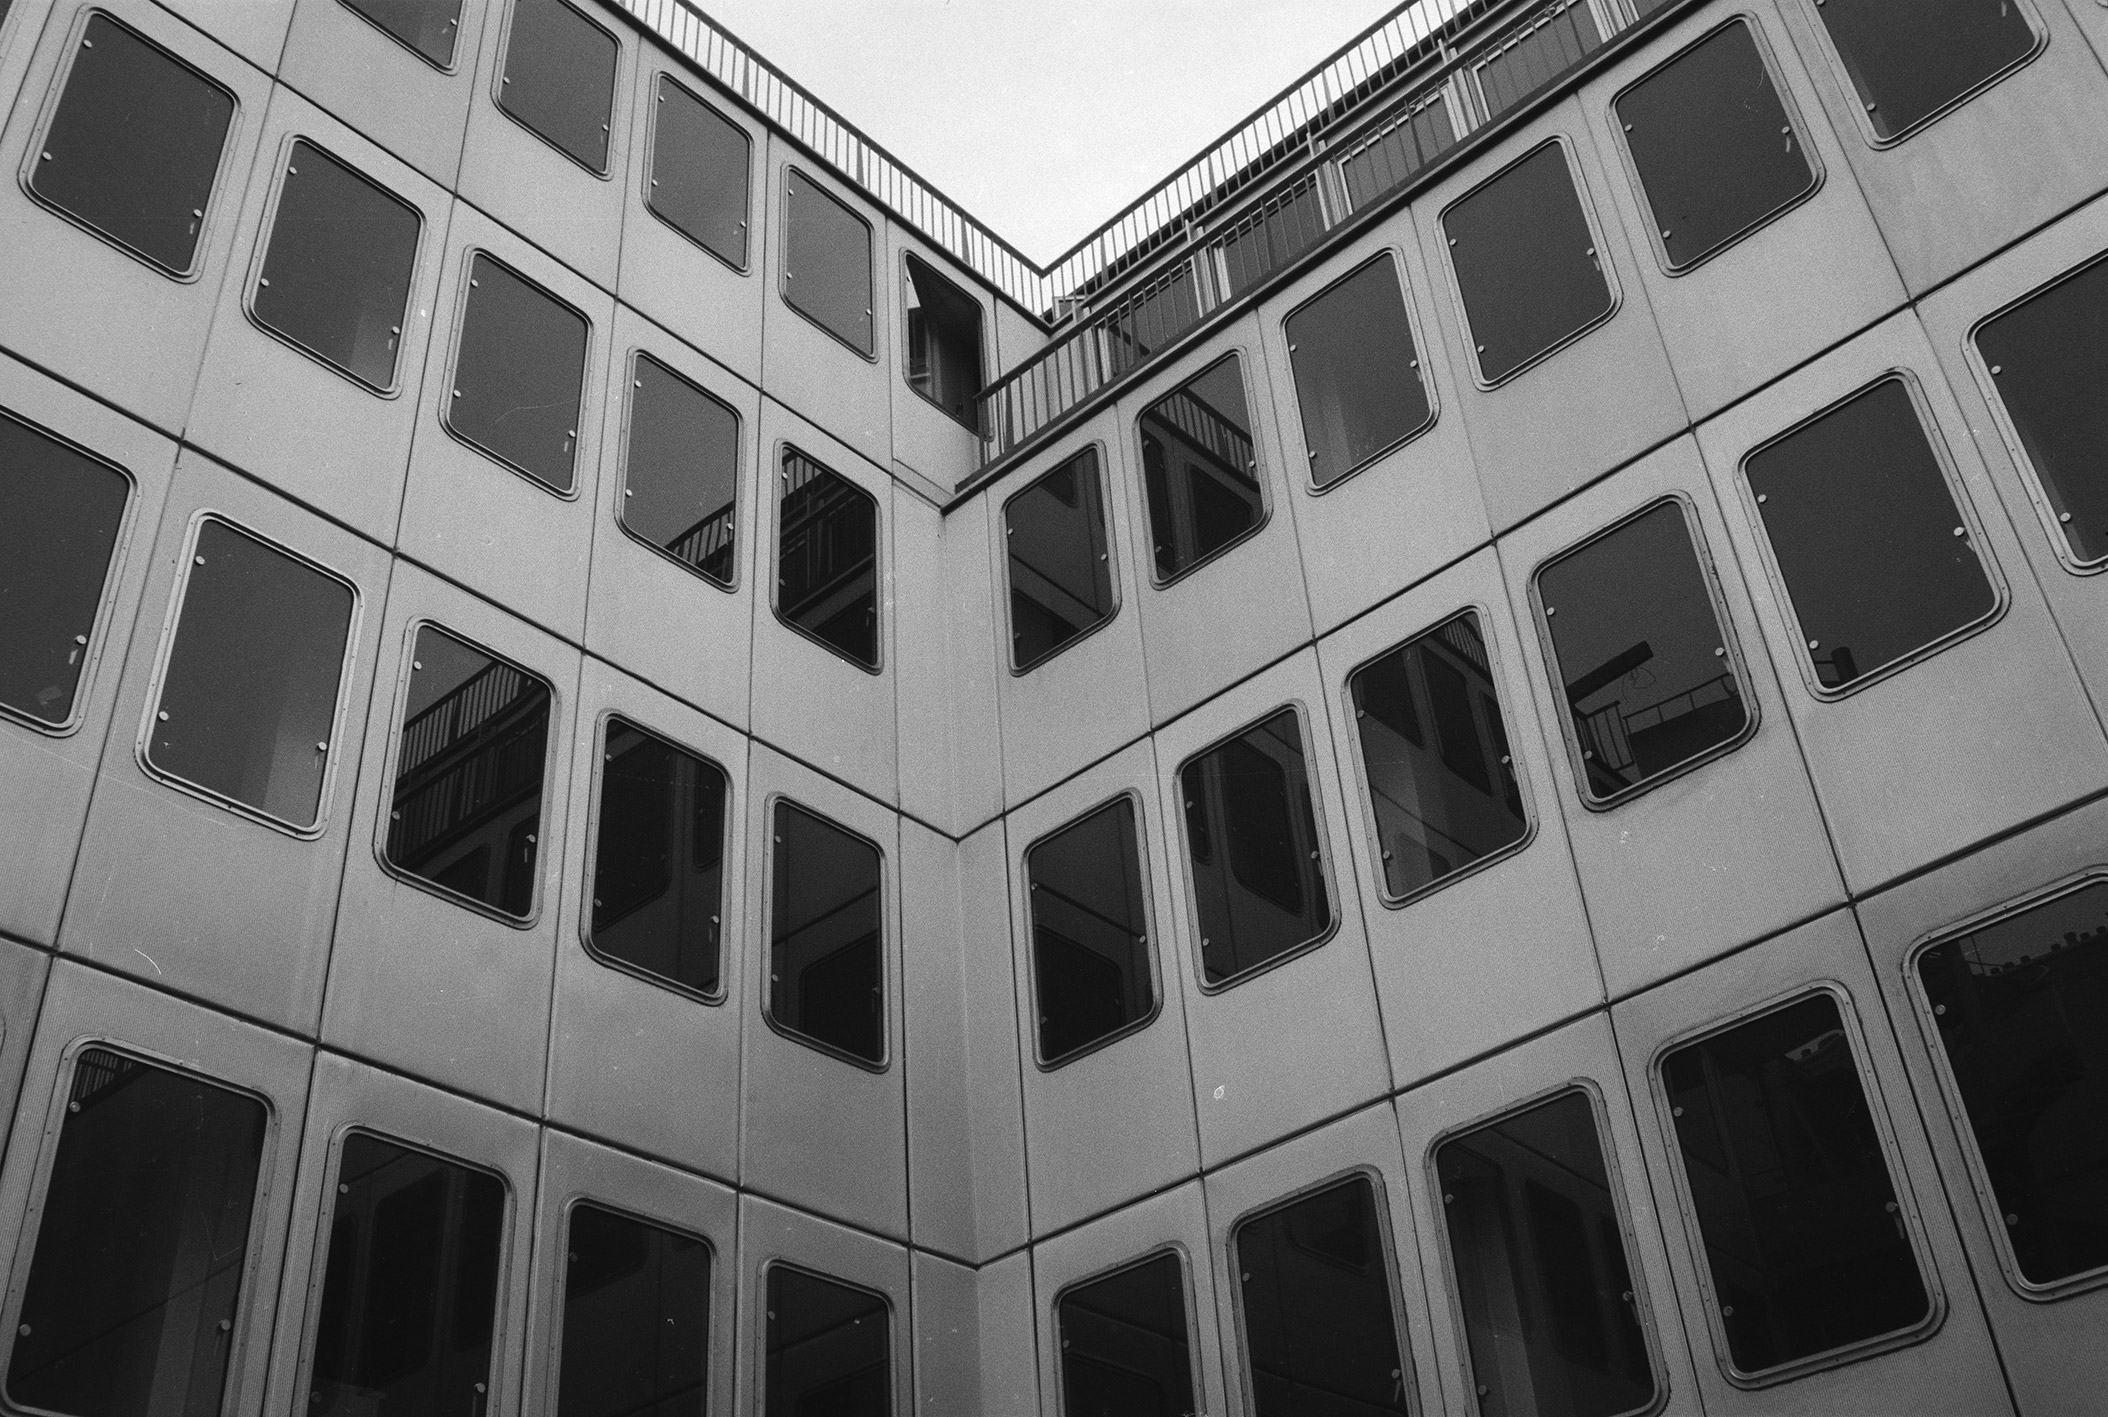 Headquarters of the Compagnie Industrielle de Matériel de Transport (CIMT), Neuilly-sur-Seine (architect E. Deschler, 1963). Facade panels designed by Jean Prouvé.